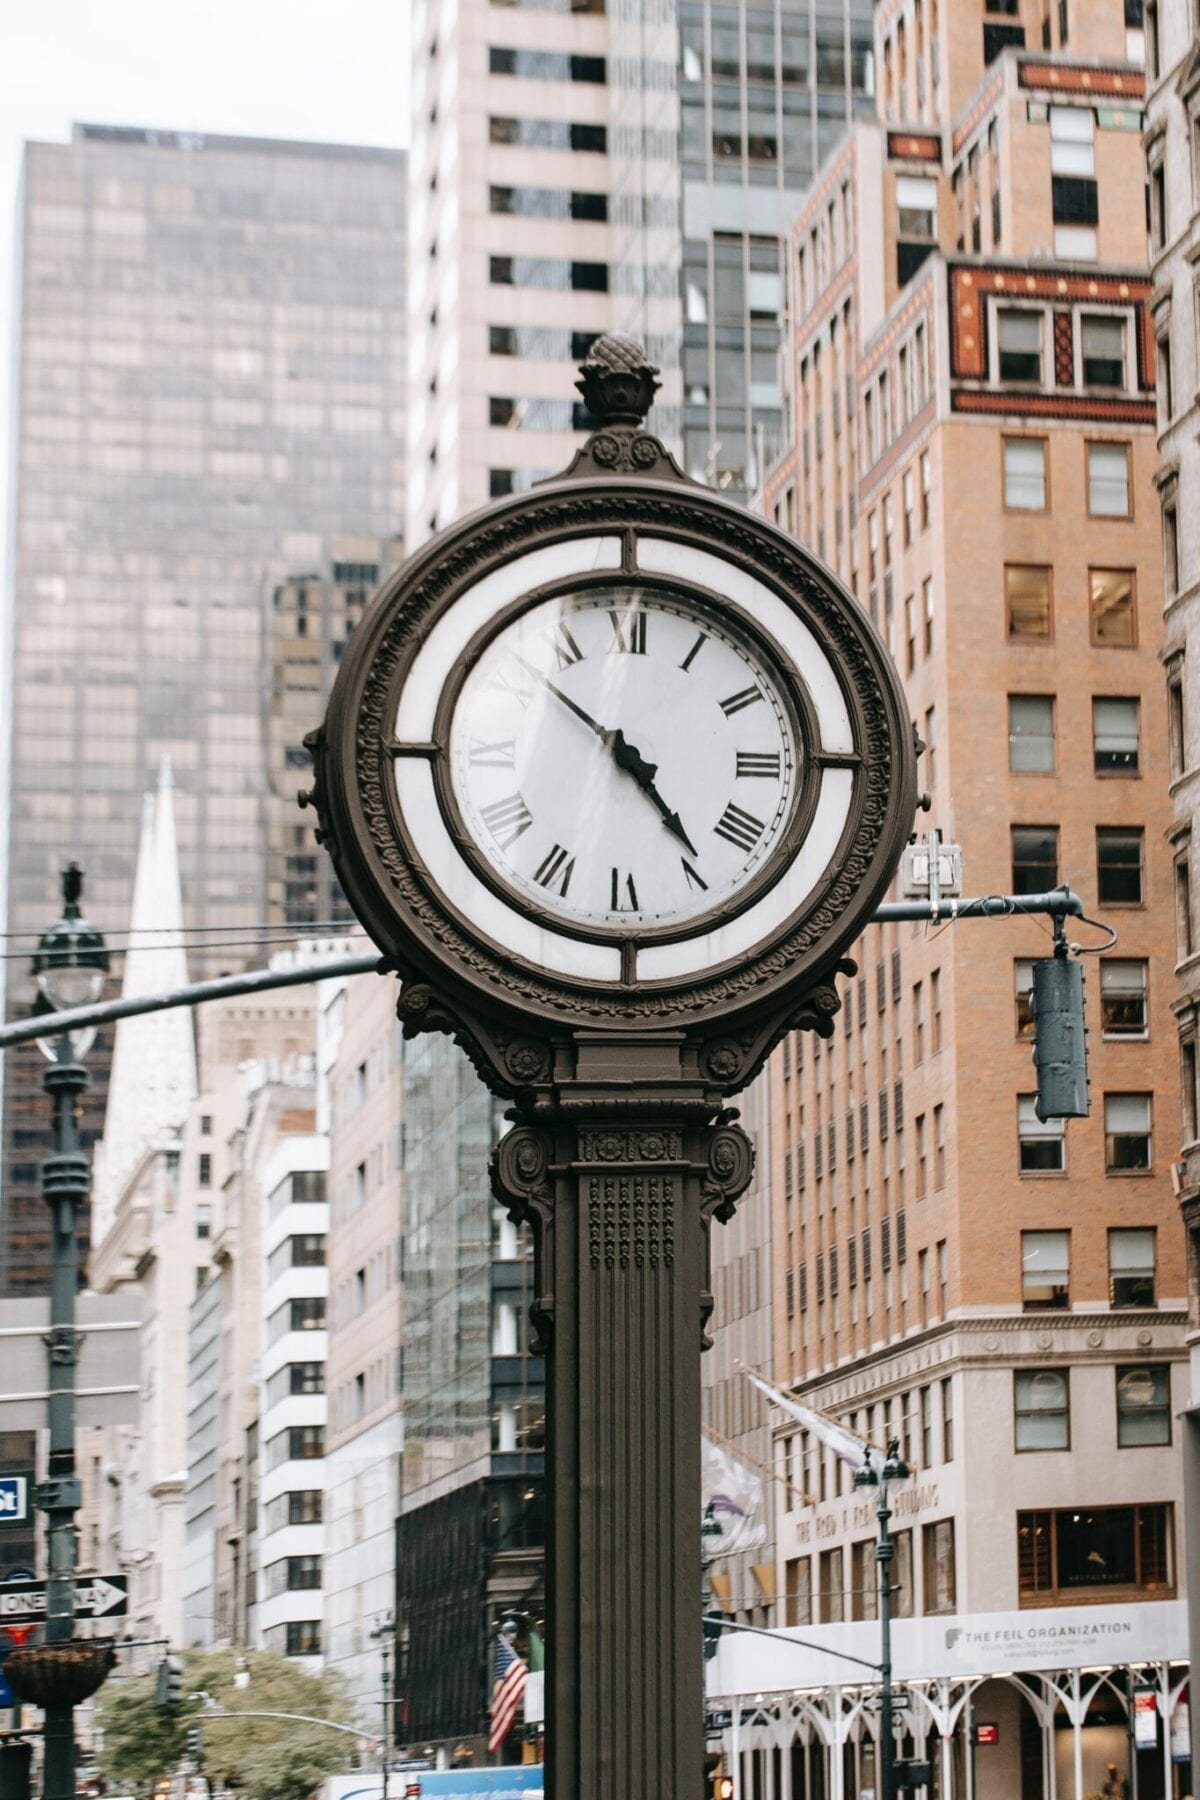 Vintage clock in city on street